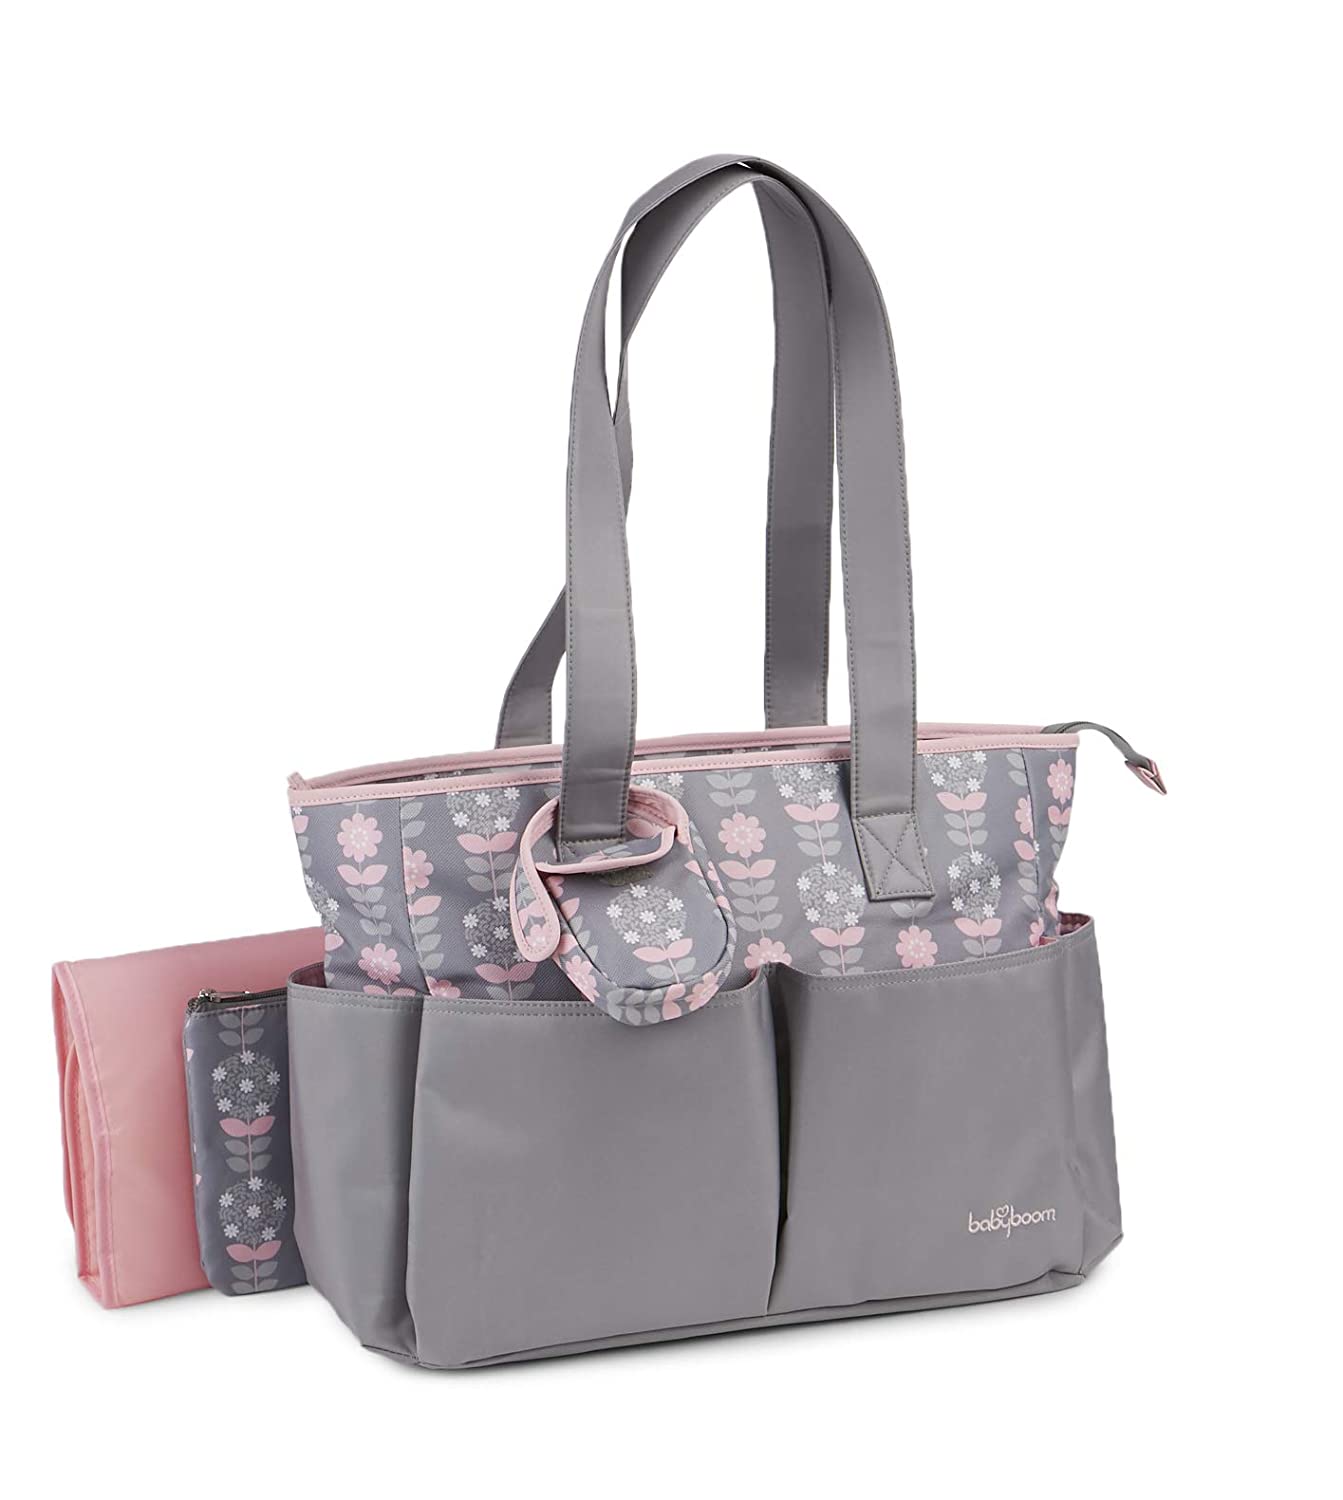 4in1 Diaper Bag set Grey/Pink